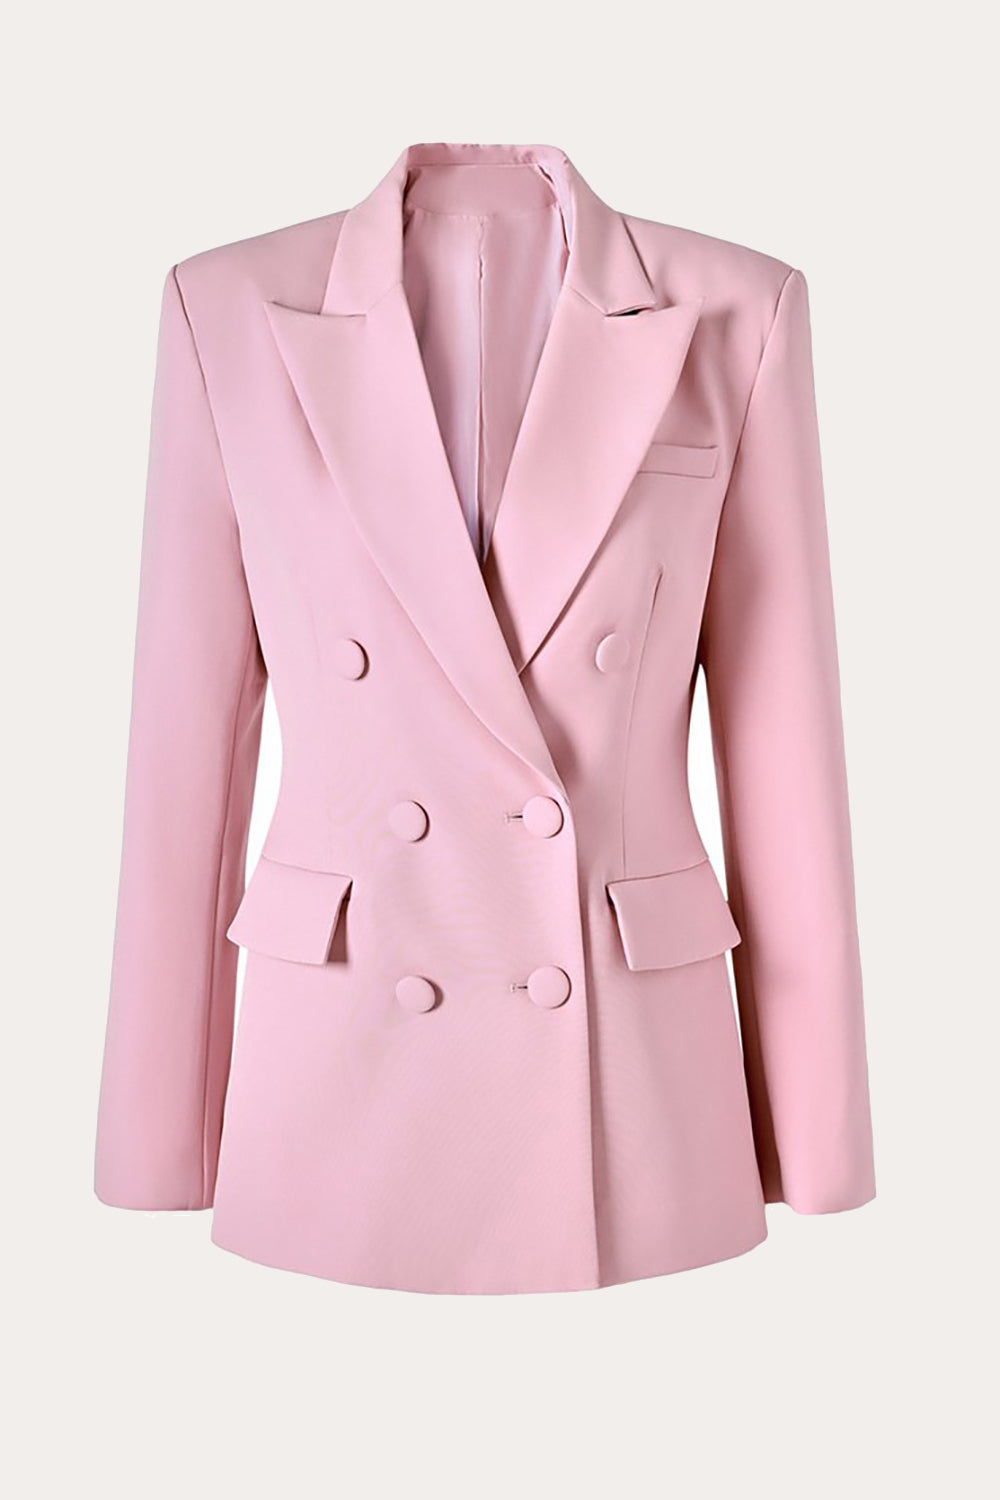 Pink Double Breasted Peak Lapel Women Business Formal Blazer